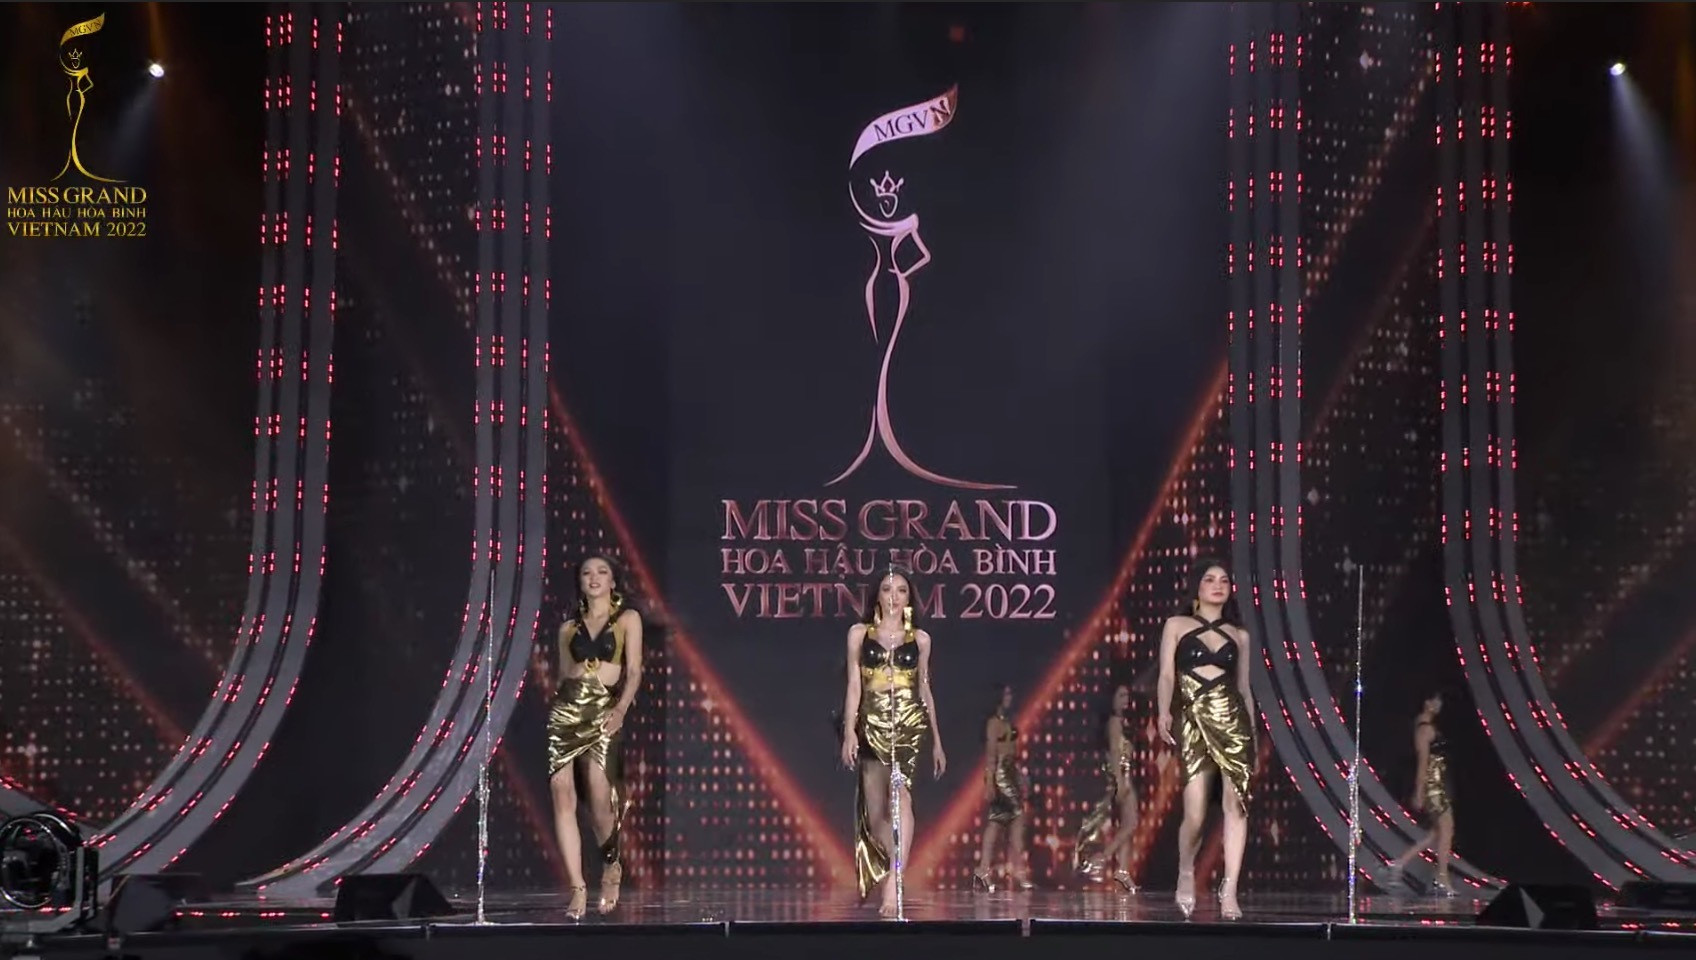 Đoàn Thiên Ân đăng quang Miss Grand Vietnam - Hoa hậu Hòa bình Việt Nam 2022 - 25